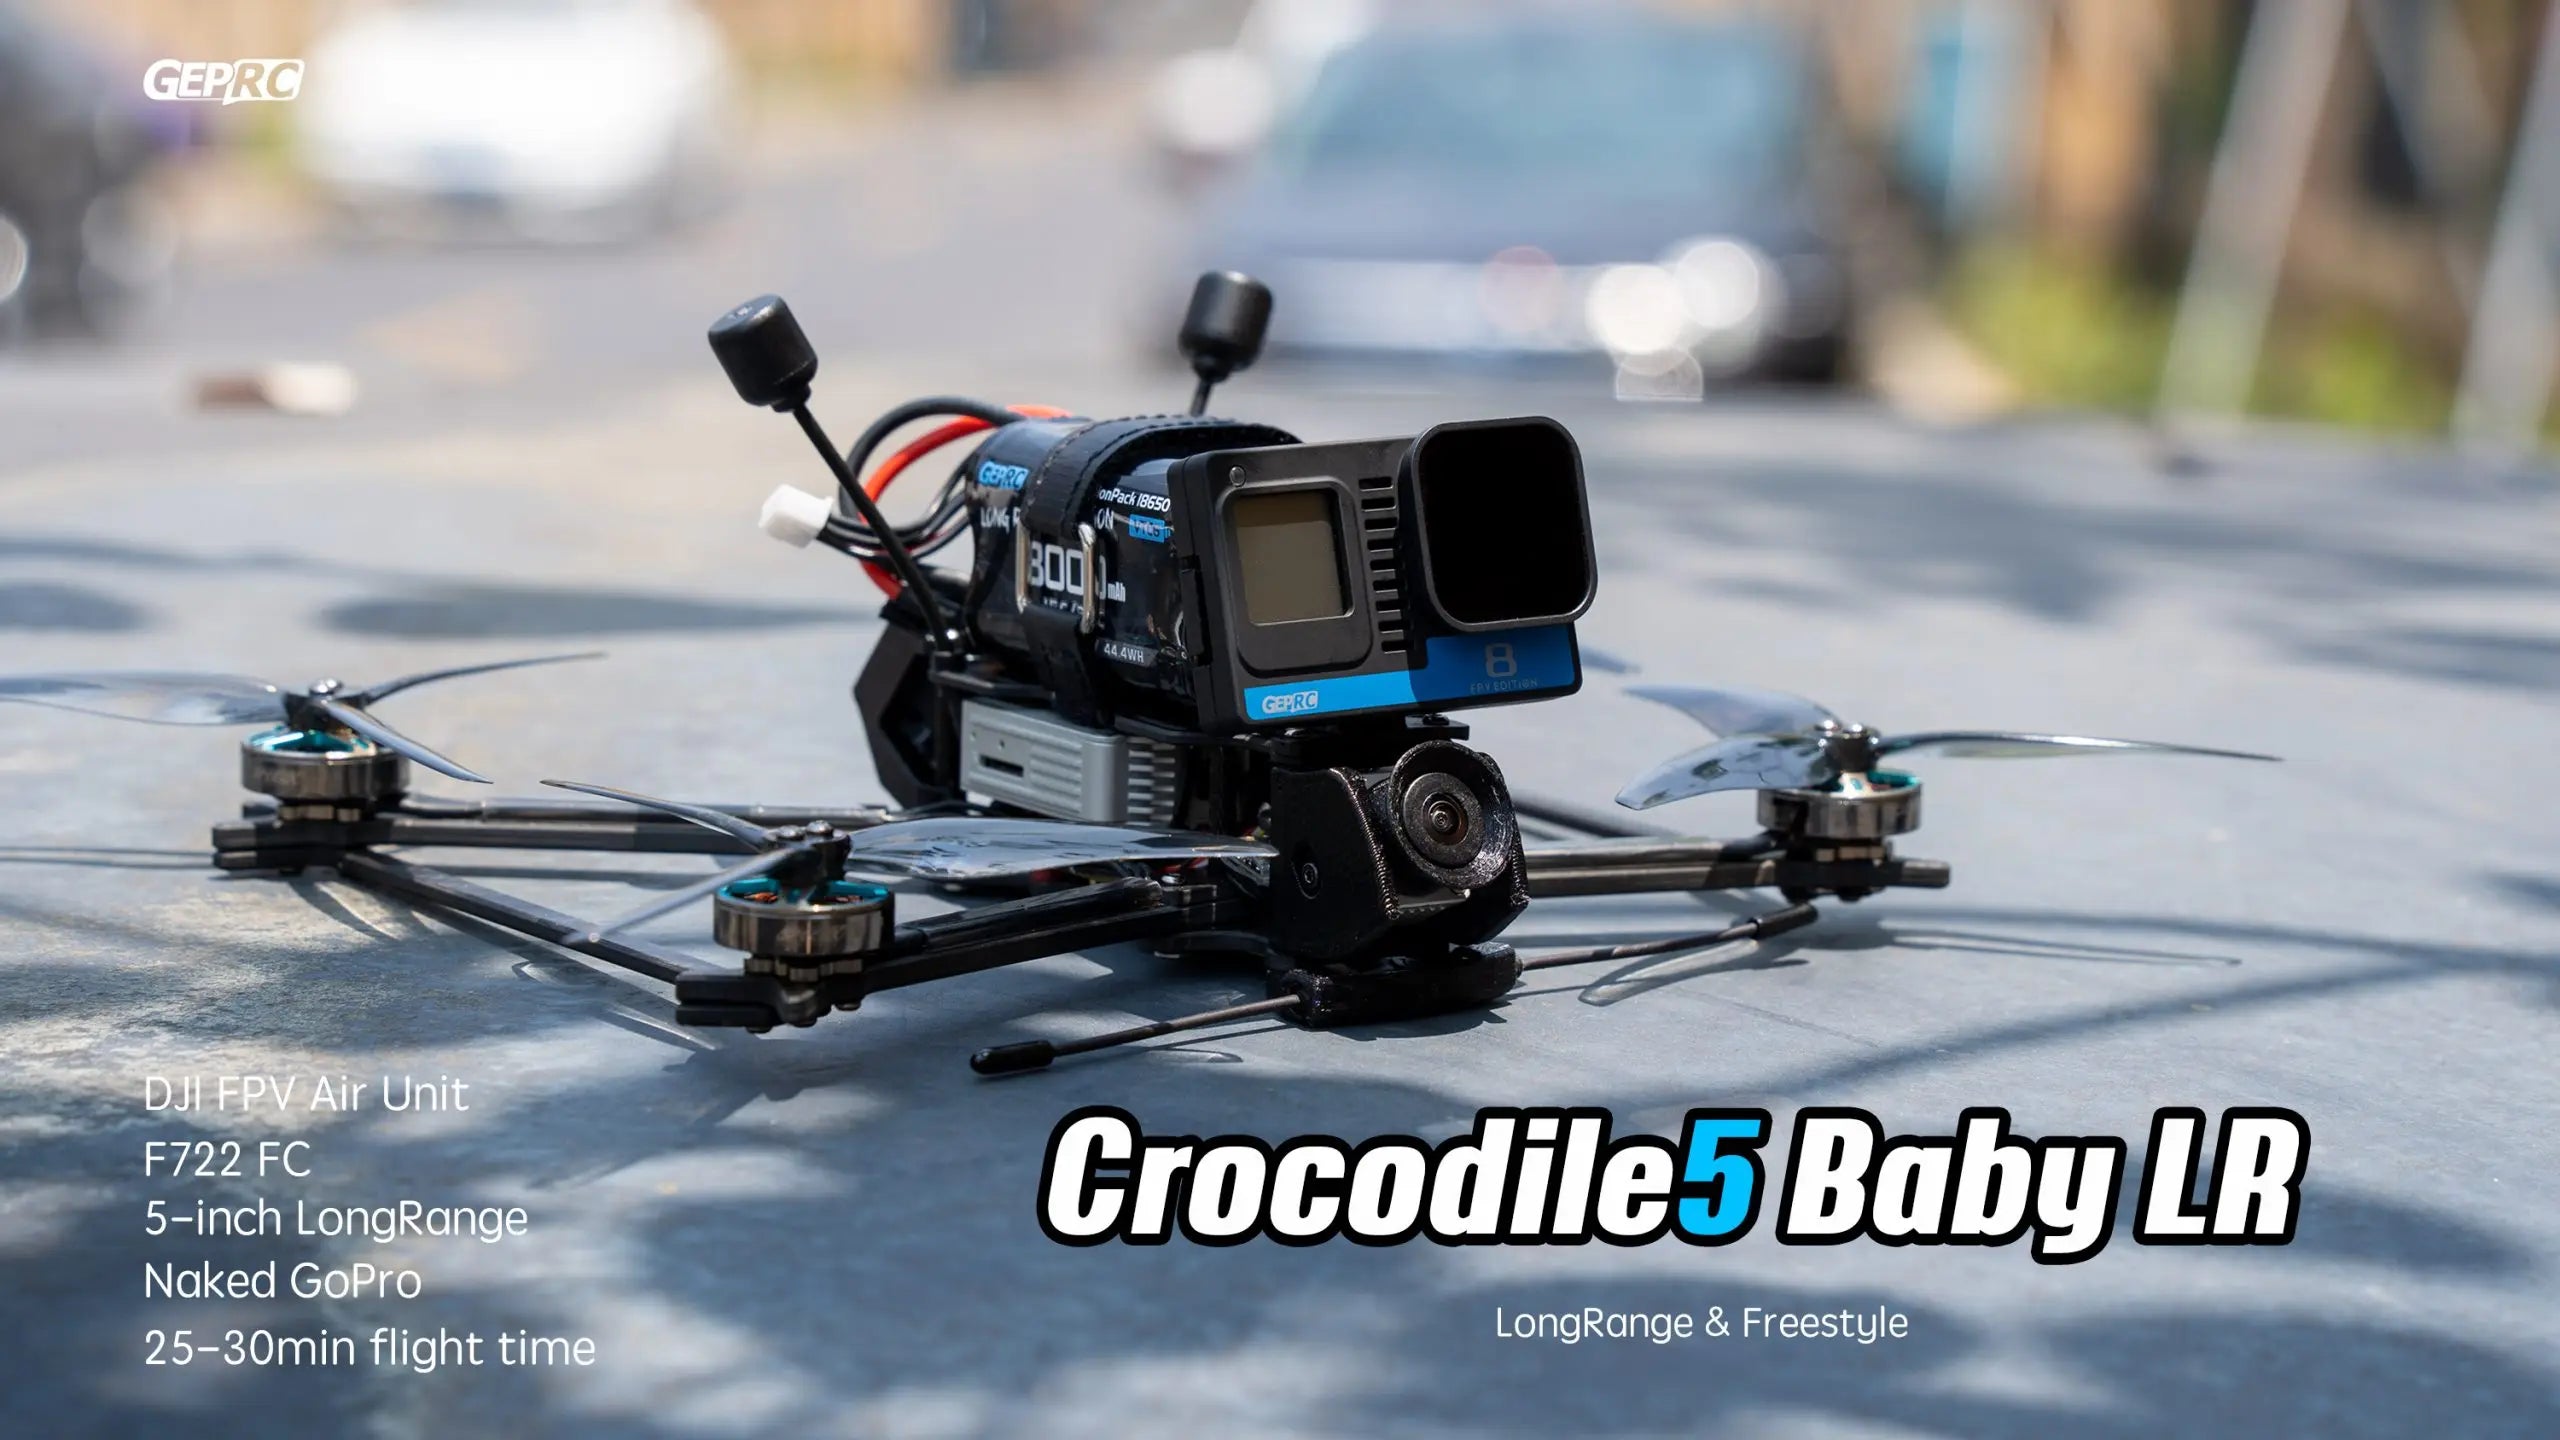 GEPRC Crocodile5 Baby FPV Drone, GARC DJI FPV Air Unit 5-inch CongRange Crocodile